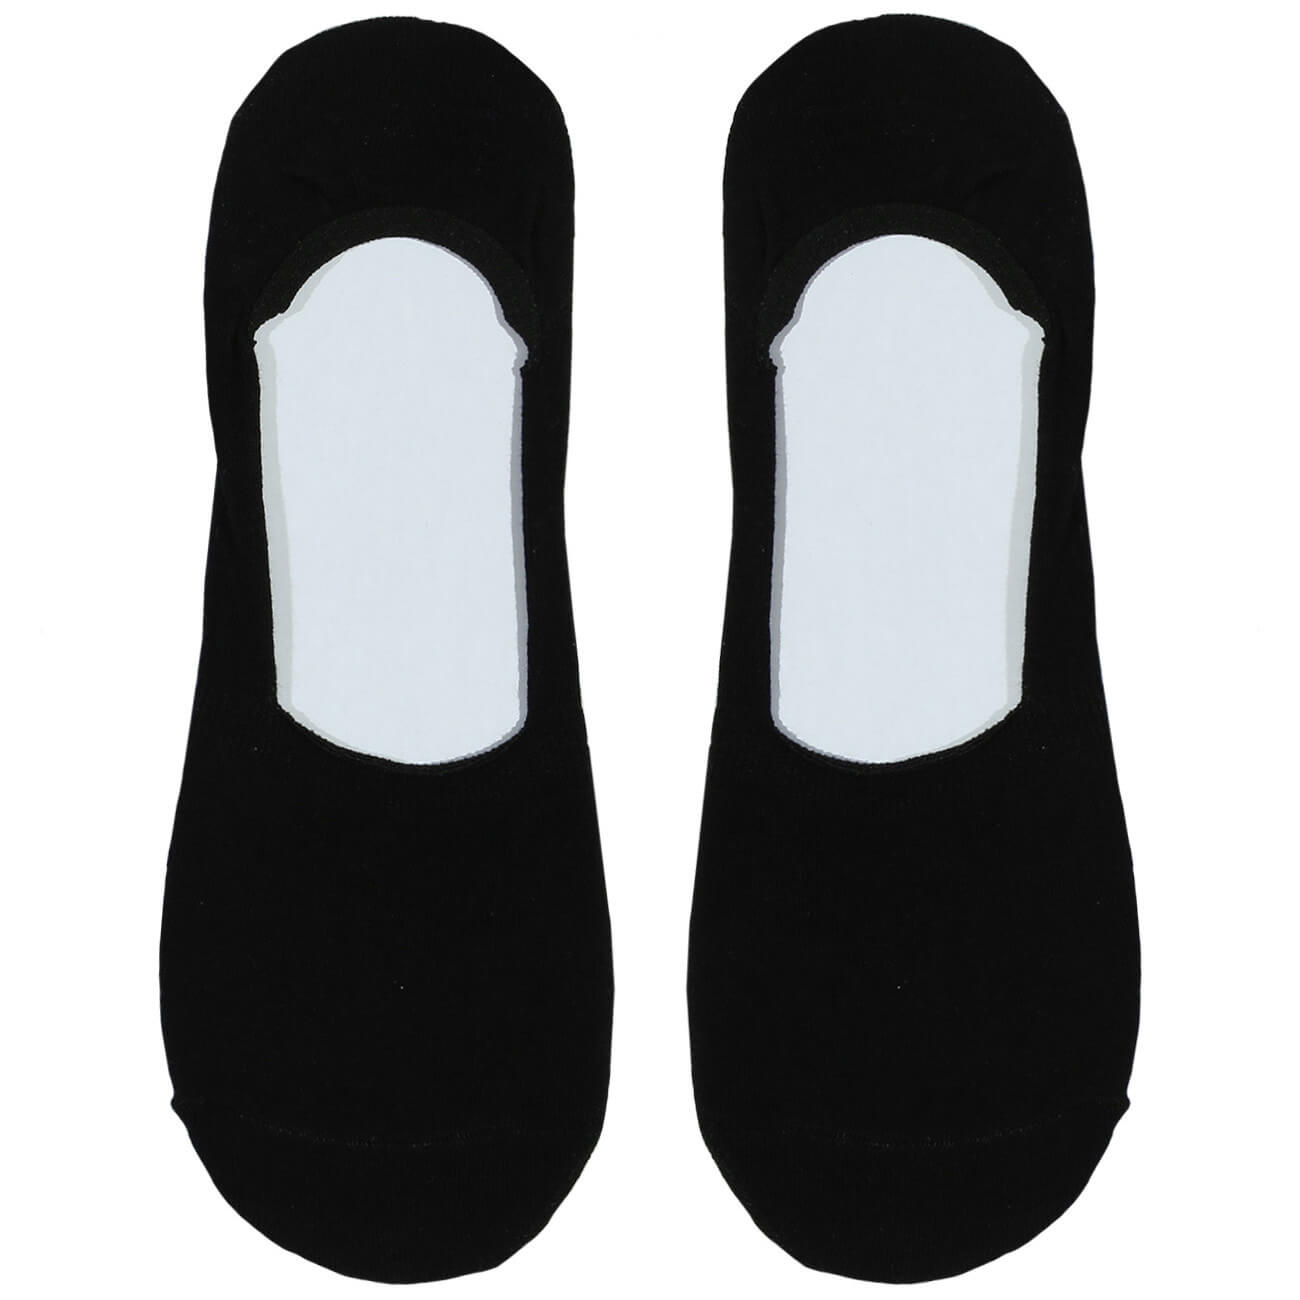 Носки-следки мужские, р. 39-42, хлопок/полиэстер, черные, Basic носки женские р 36 38 хлопок полиэстер черные basic